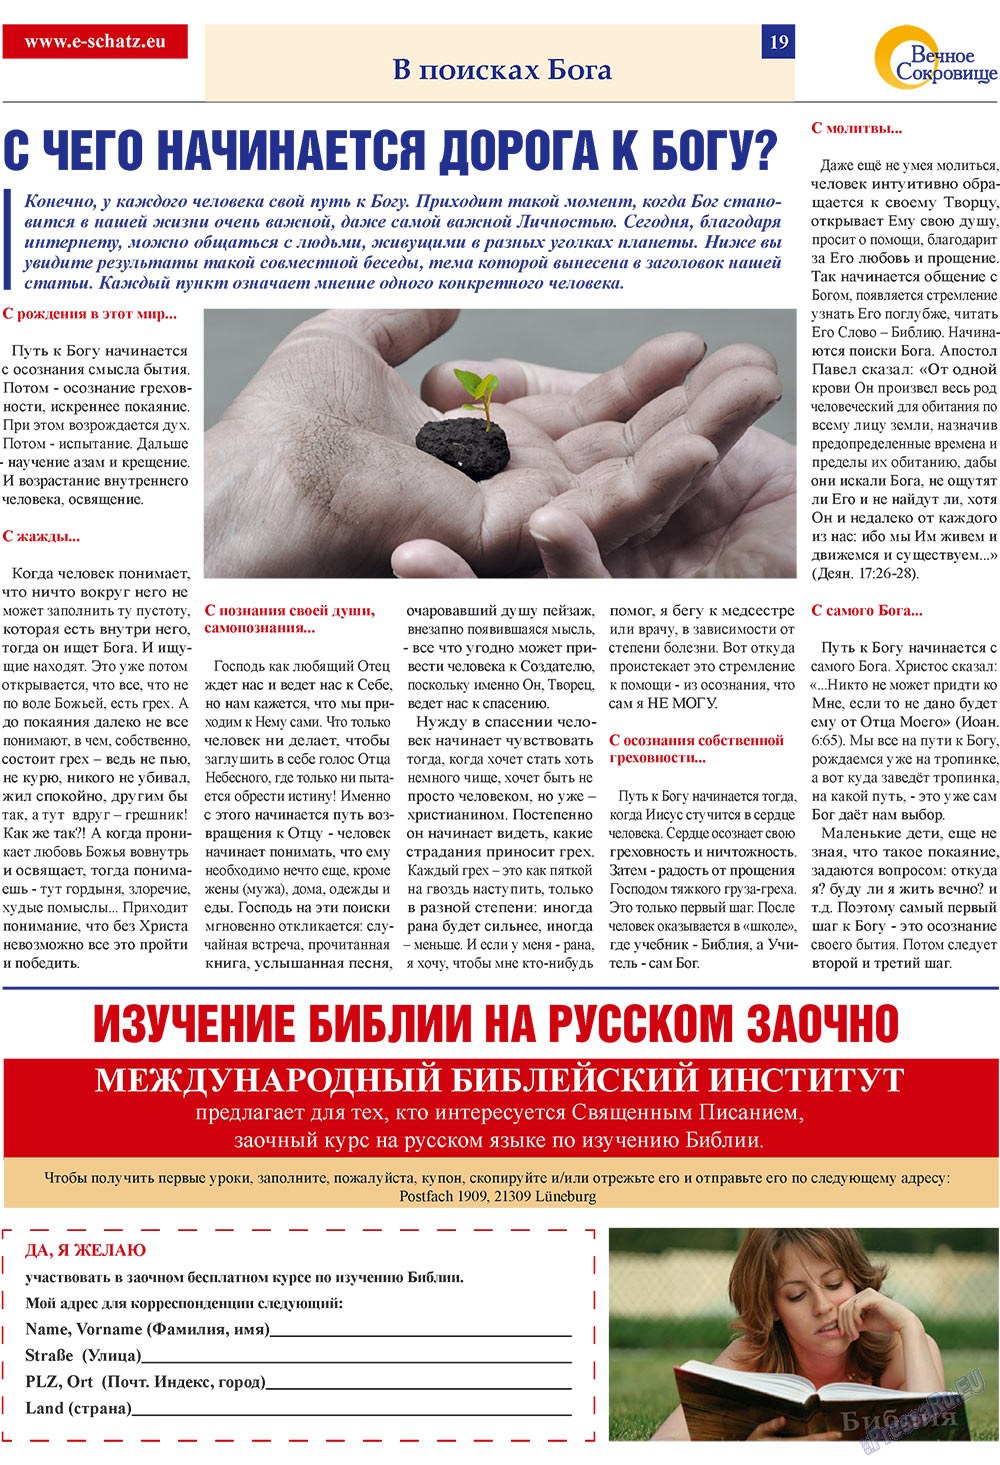 Вечное сокровище (газета). 2009 год, номер 2, стр. 19